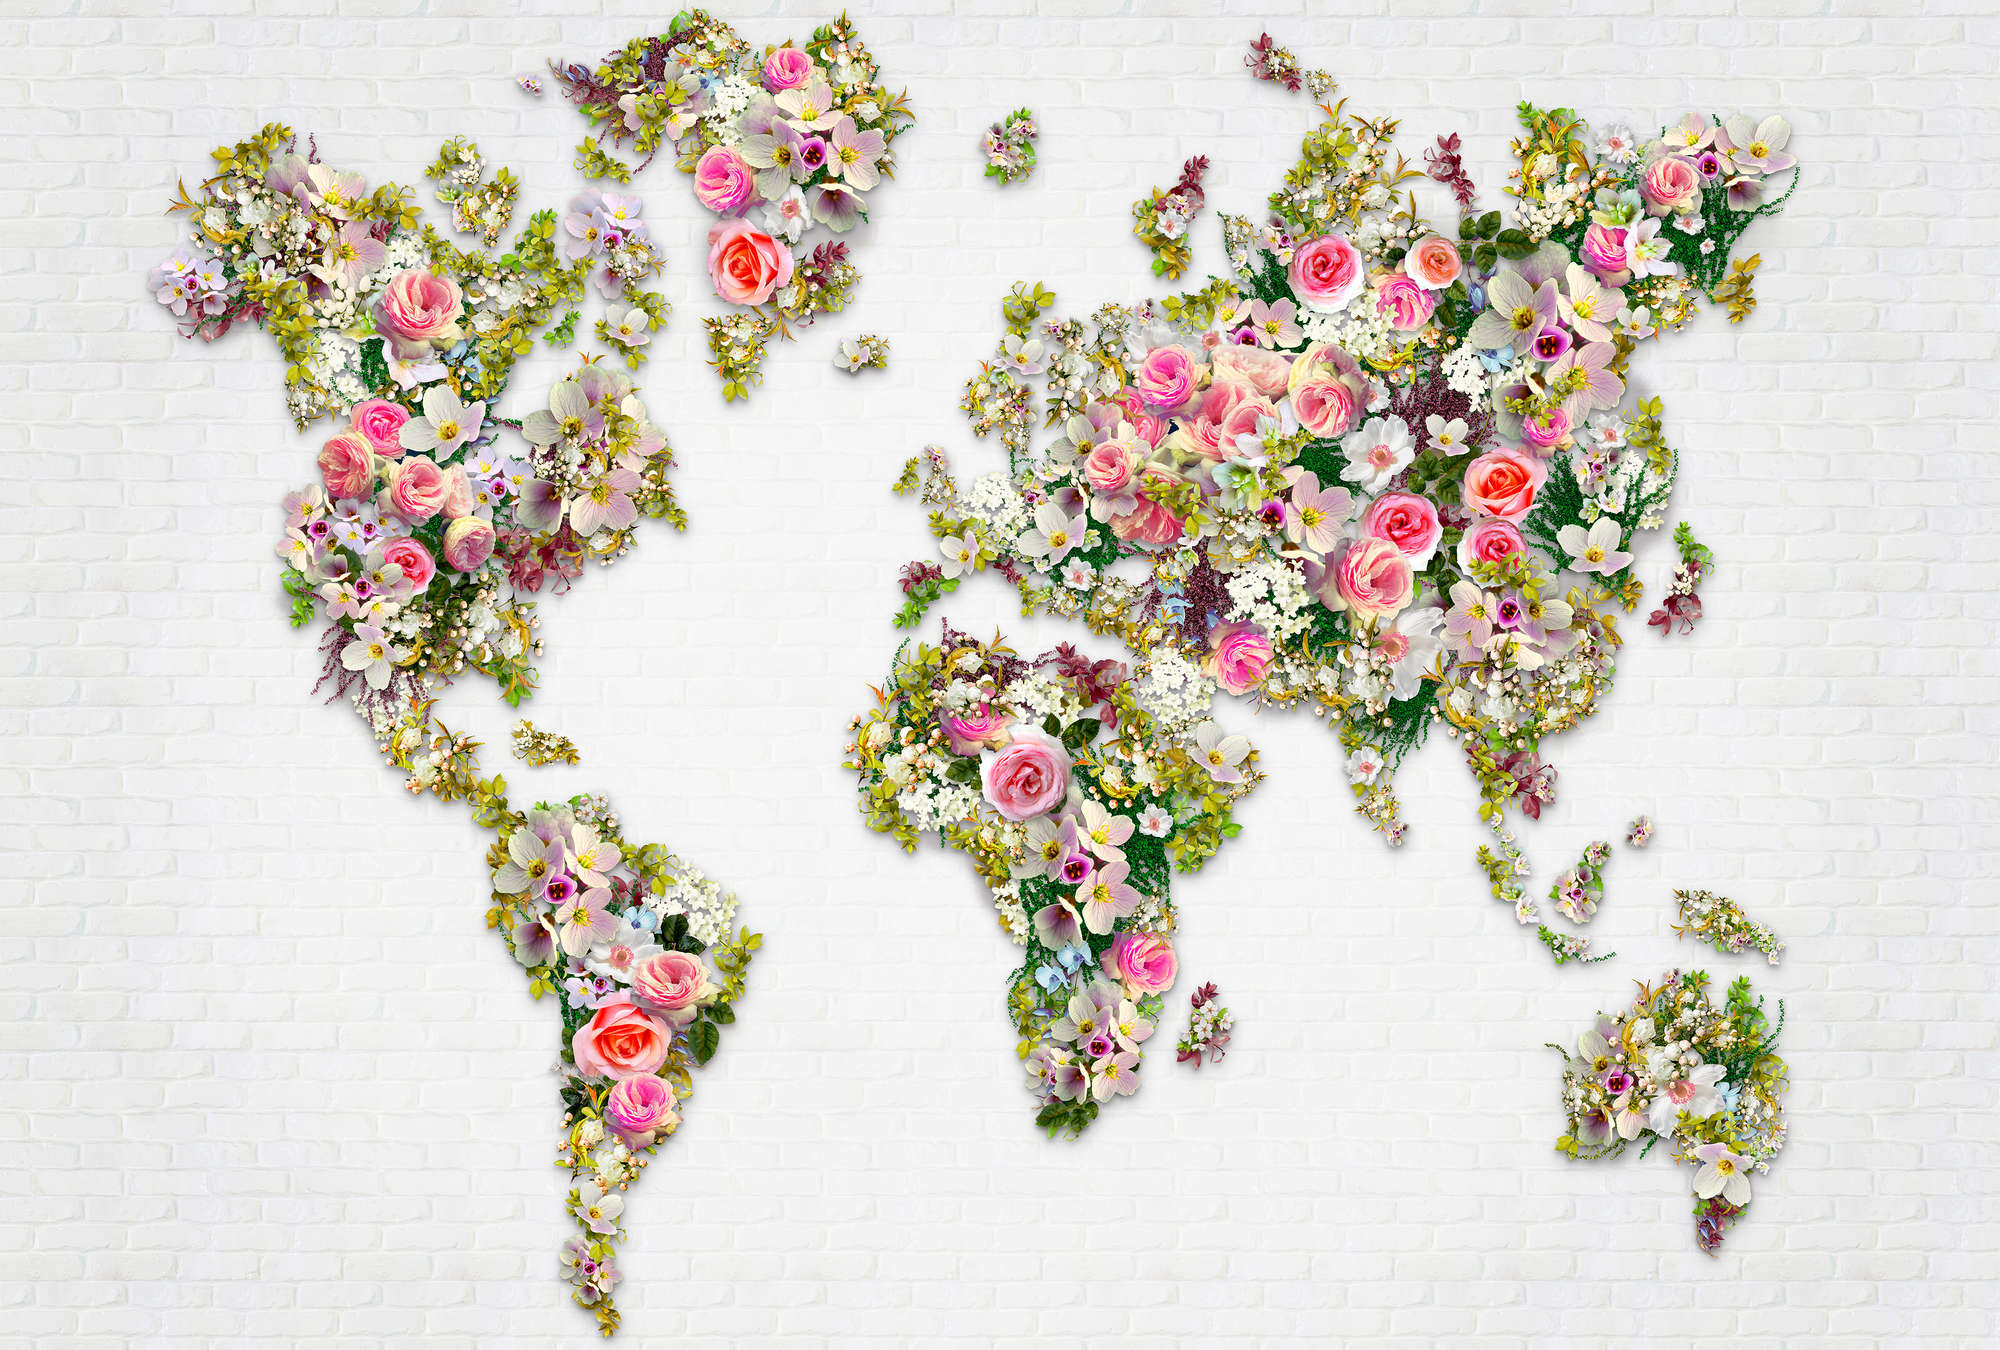             Roses & Blossoms muurschildering als wereldkaart op een witte muur
        